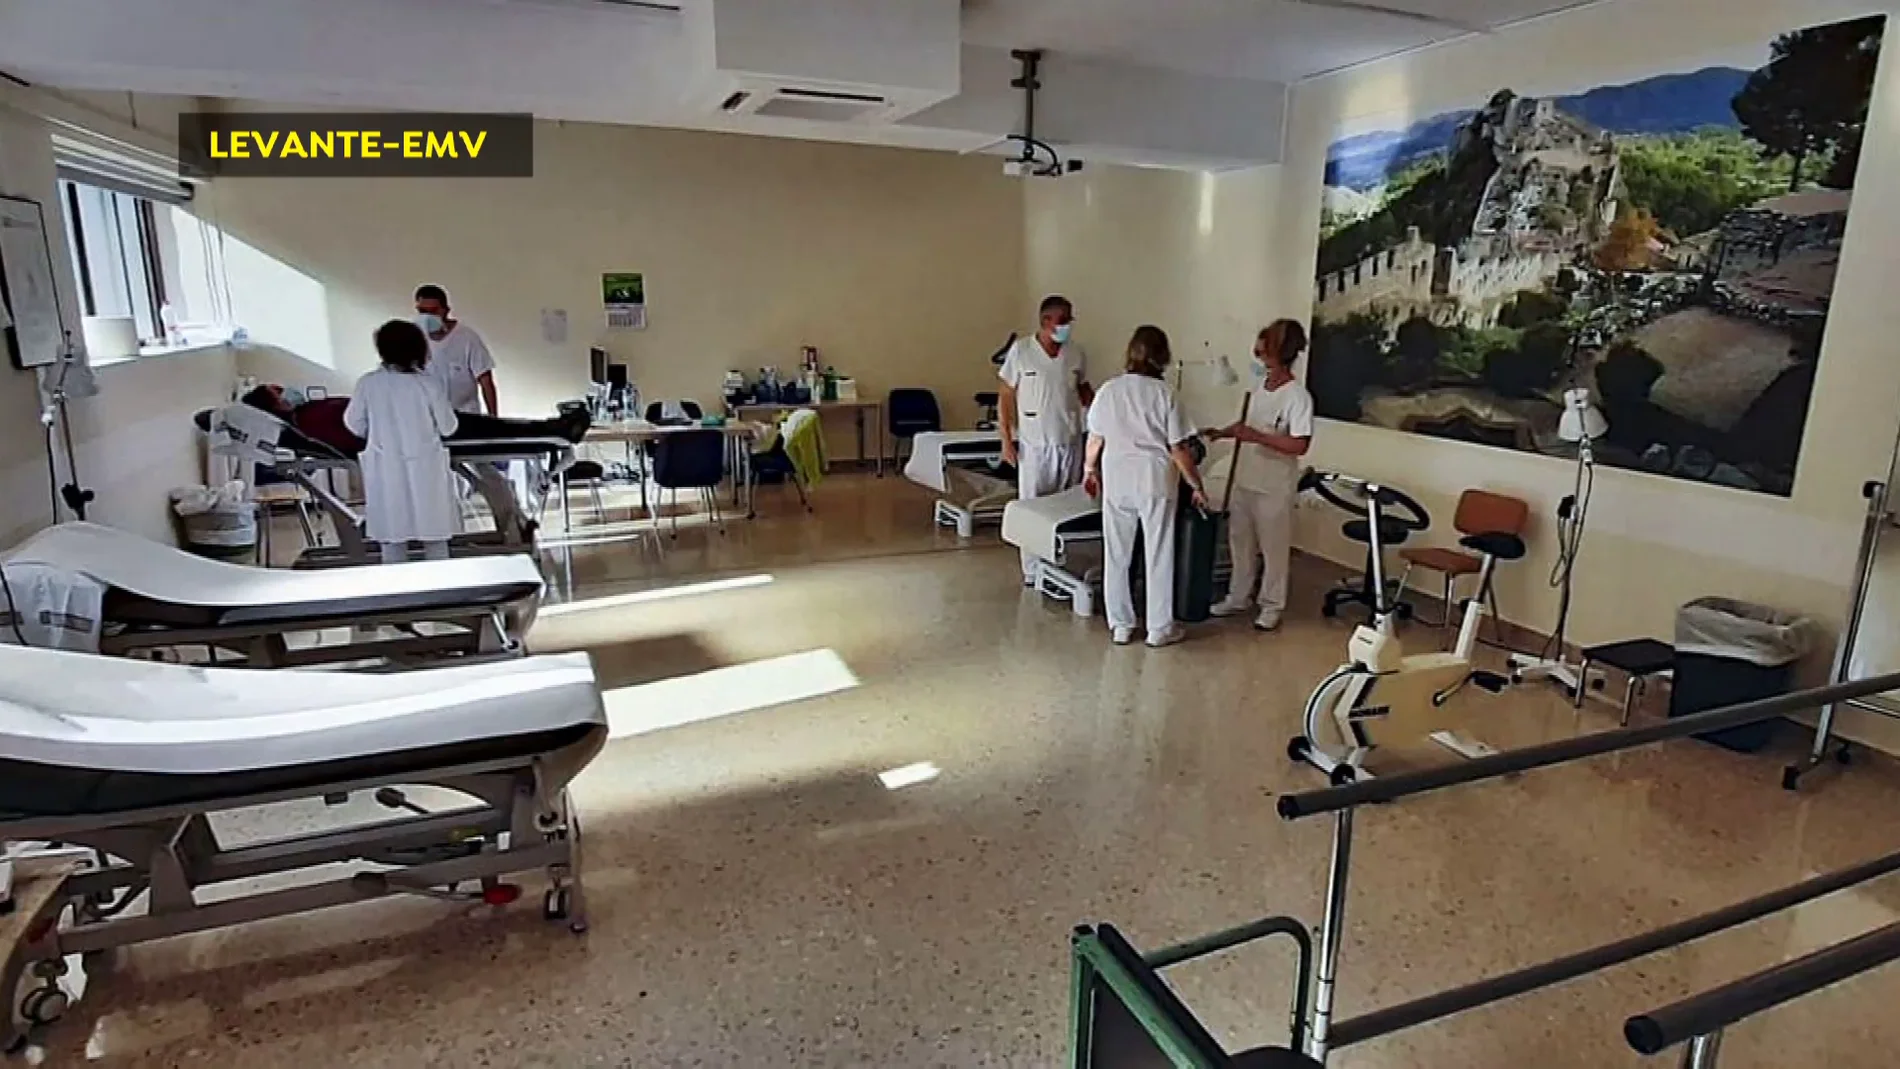 El hospital de Xátiva pone camas en el gimnasio de rehabilitación para poder atender a los pacientes Covid